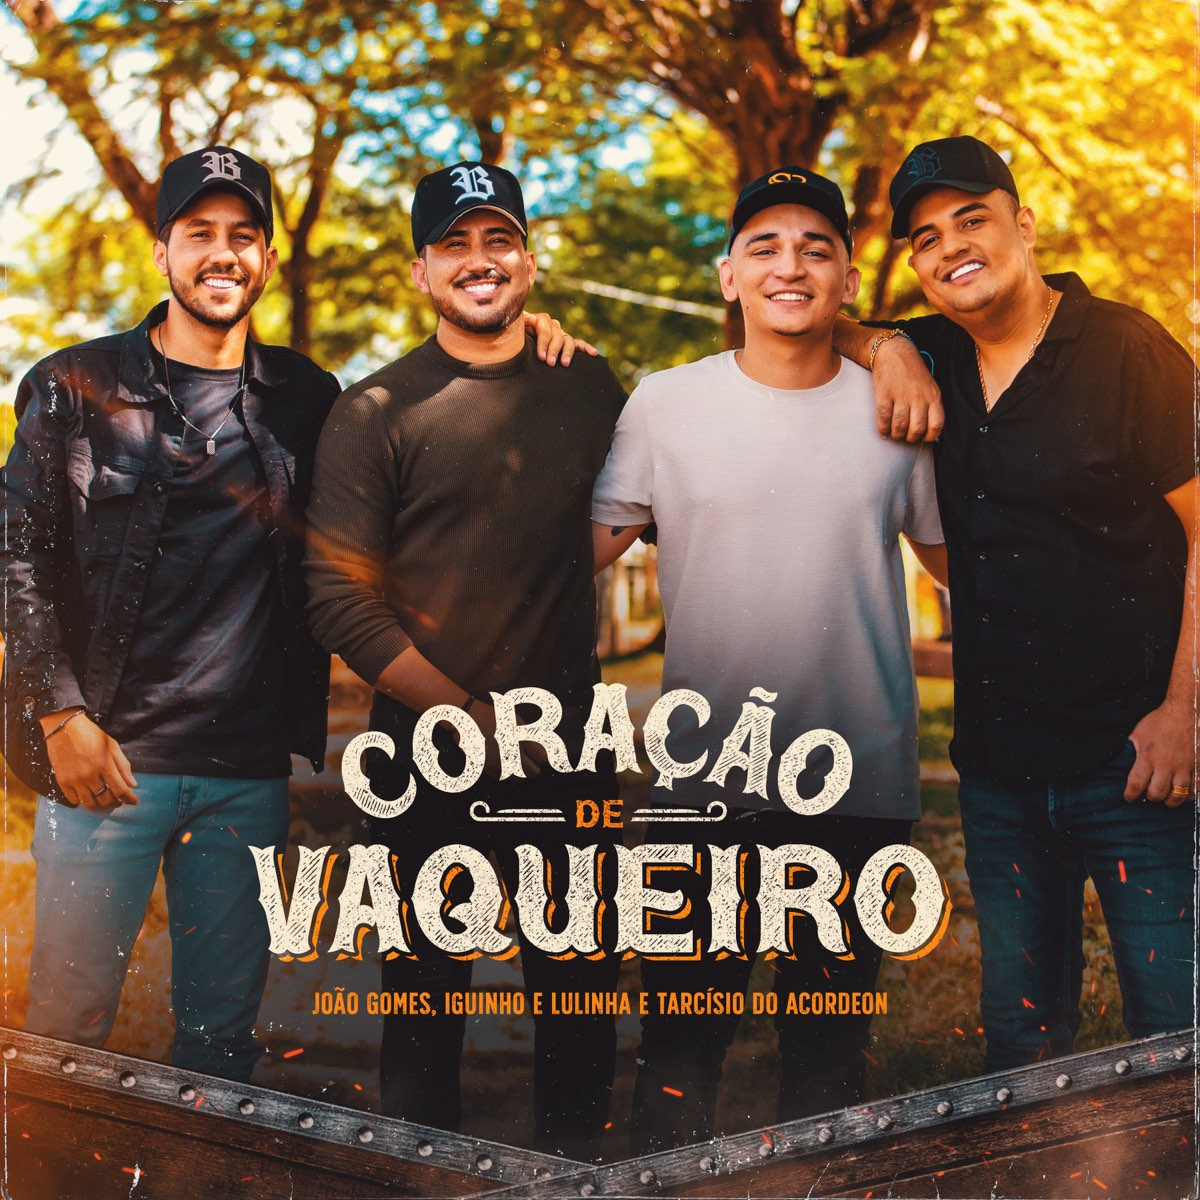 João Gomes, Iguinho e Lulinha, & Tarcisio do Acordeon — Coração de Vaqueiro cover artwork